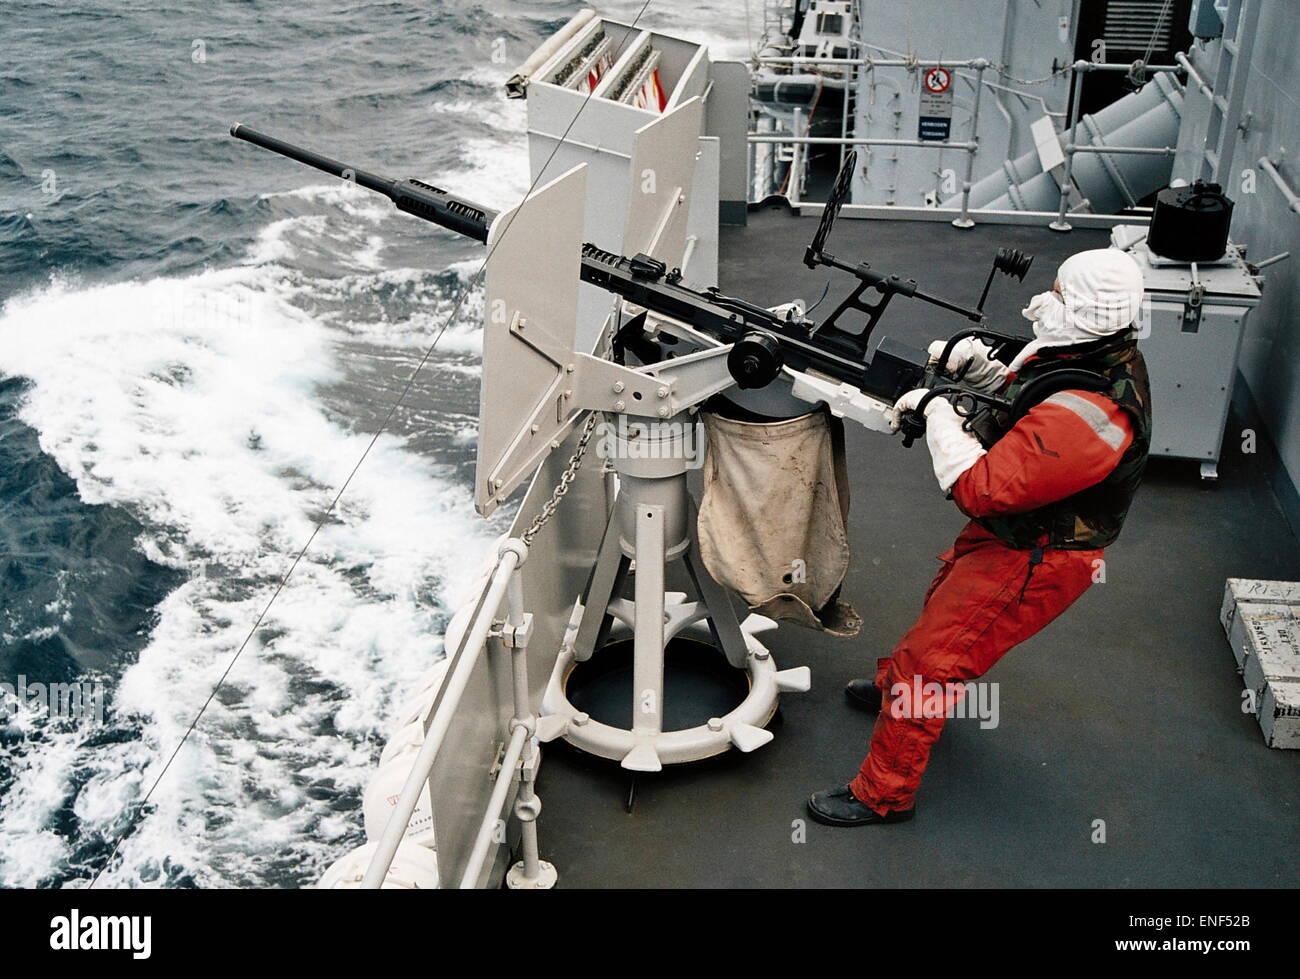 AJAXNETPHOTO. En mer. Préparation de l'essai au feu d'un canon anti-aérien OERLIKON À PARTIR D'UNE FRÉGATE. PHOTO:JONATHAN EASTLAND/AJAX REF:3565 5 33 Banque D'Images